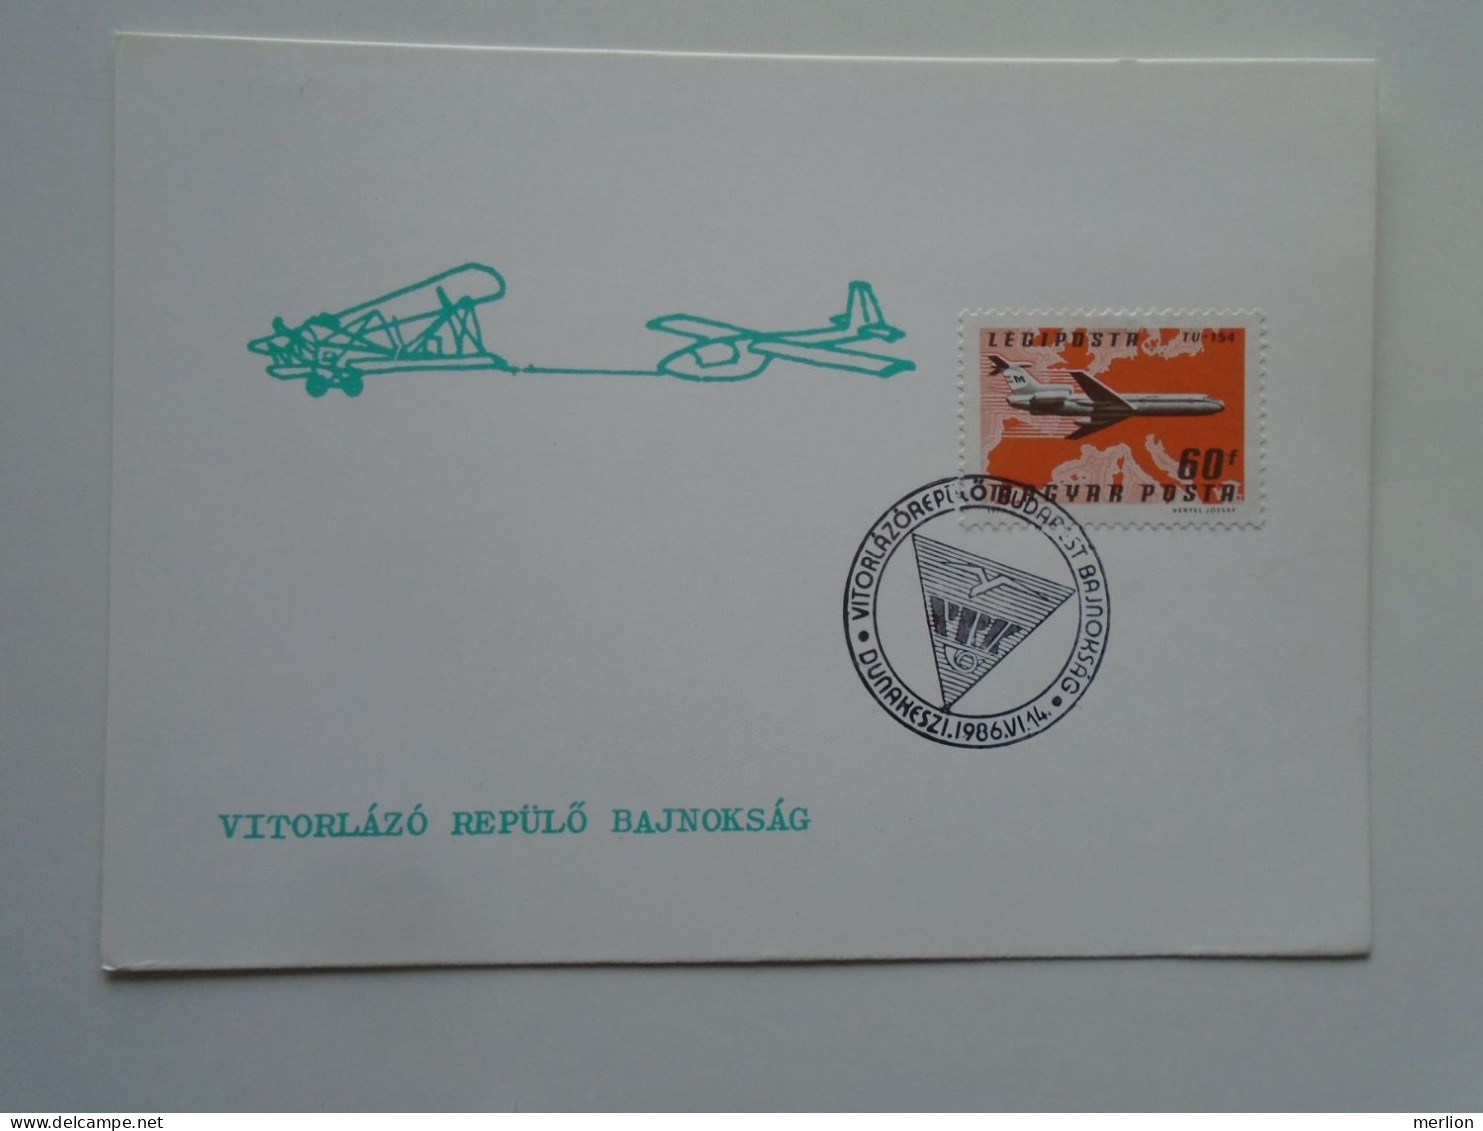 D200645 Hungary  -1986 Emléklap Levelezőlap - Postcard Dunakeszi  Gliding Championship  Championnat De Vol à Voile - Tranvie